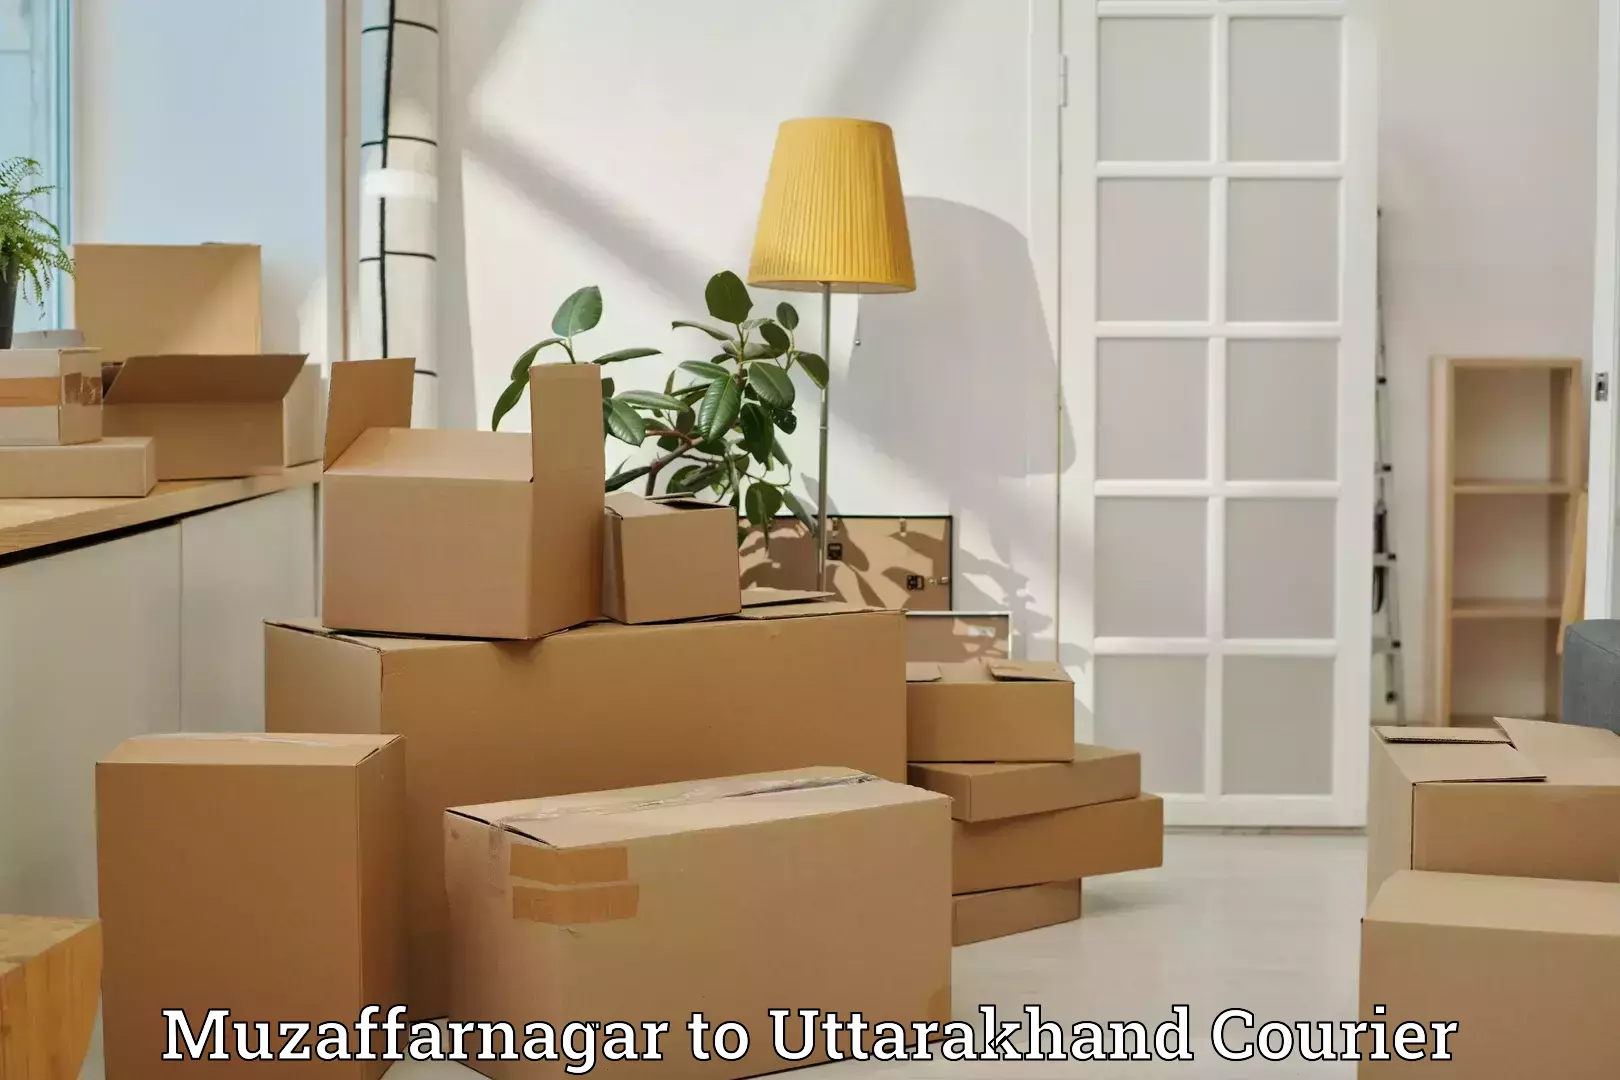 Luggage transport company Muzaffarnagar to IIT Roorkee